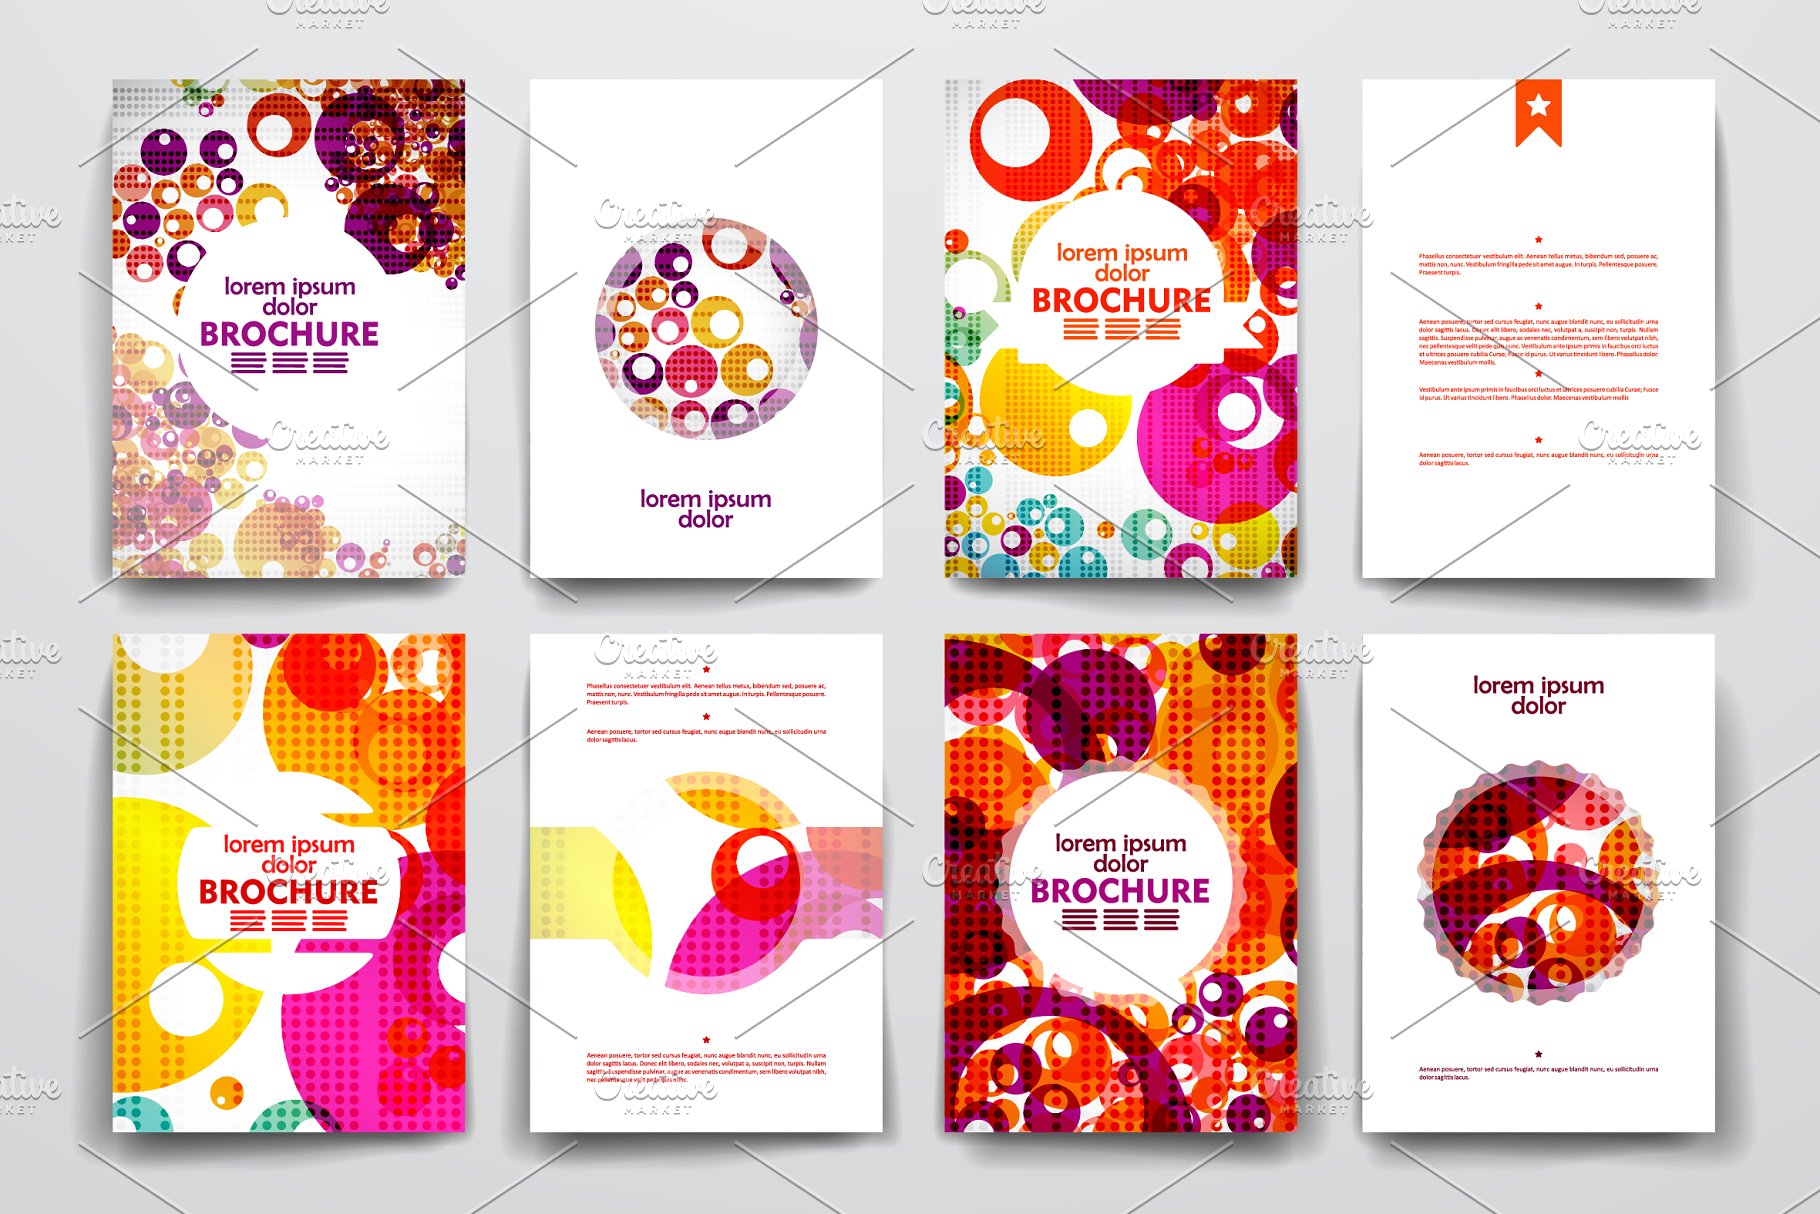 一套彩色抽象风格小册子模板  Colourful brochure templates插图1